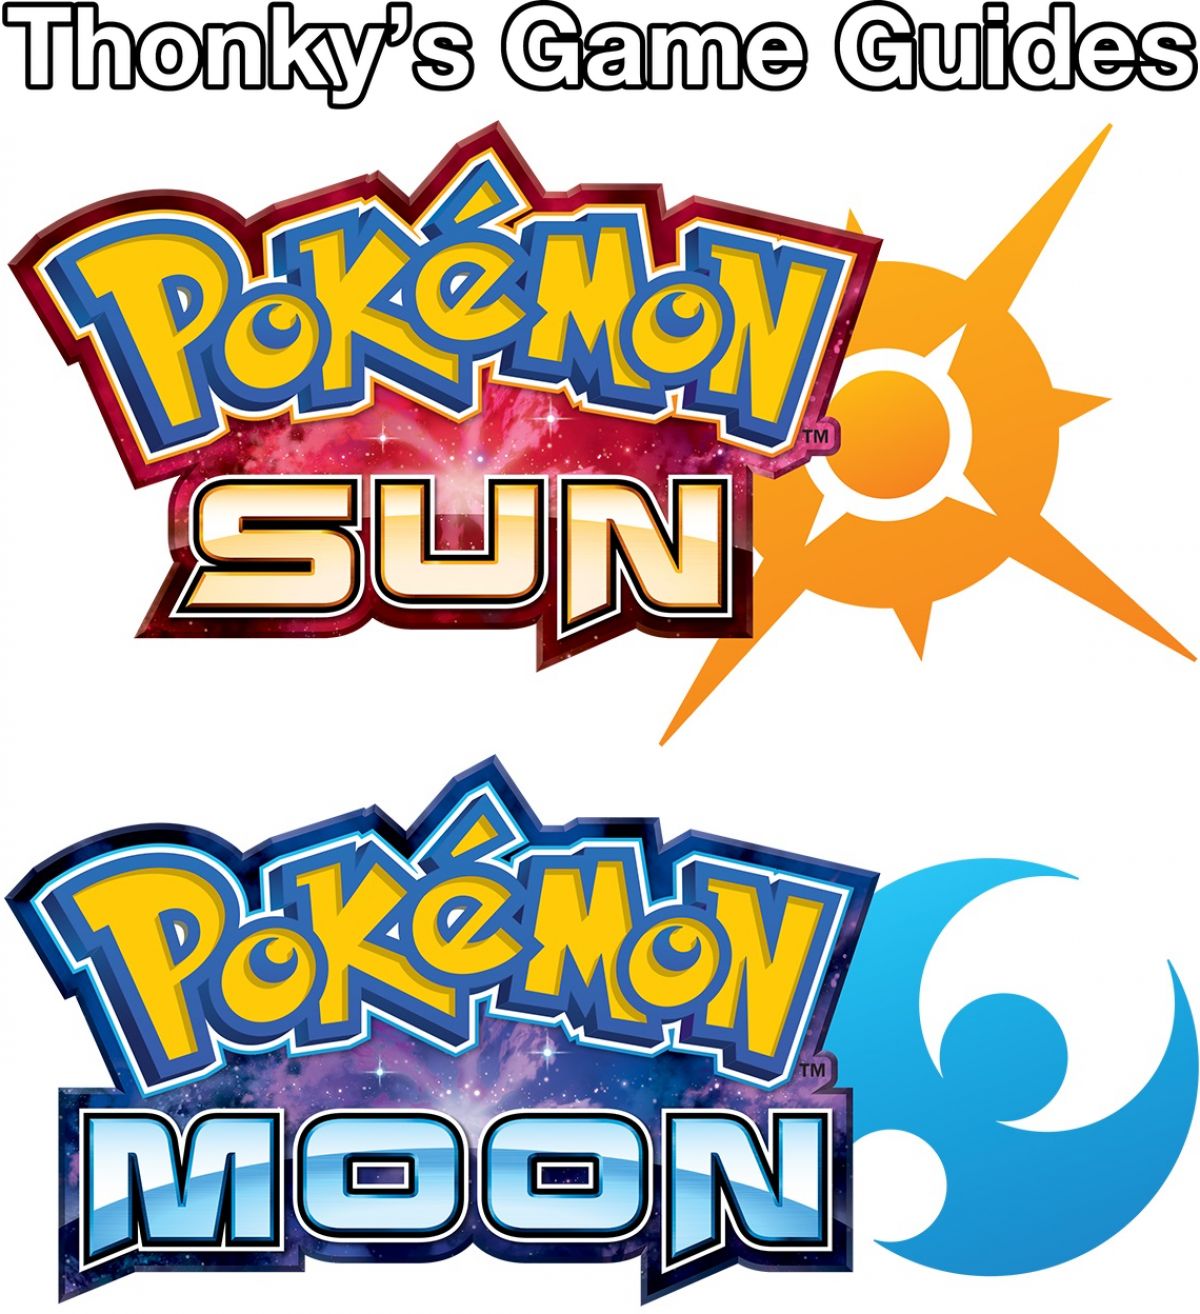 Pinsir - Pokemon Sun & Pokemon Moon Guide - IGN